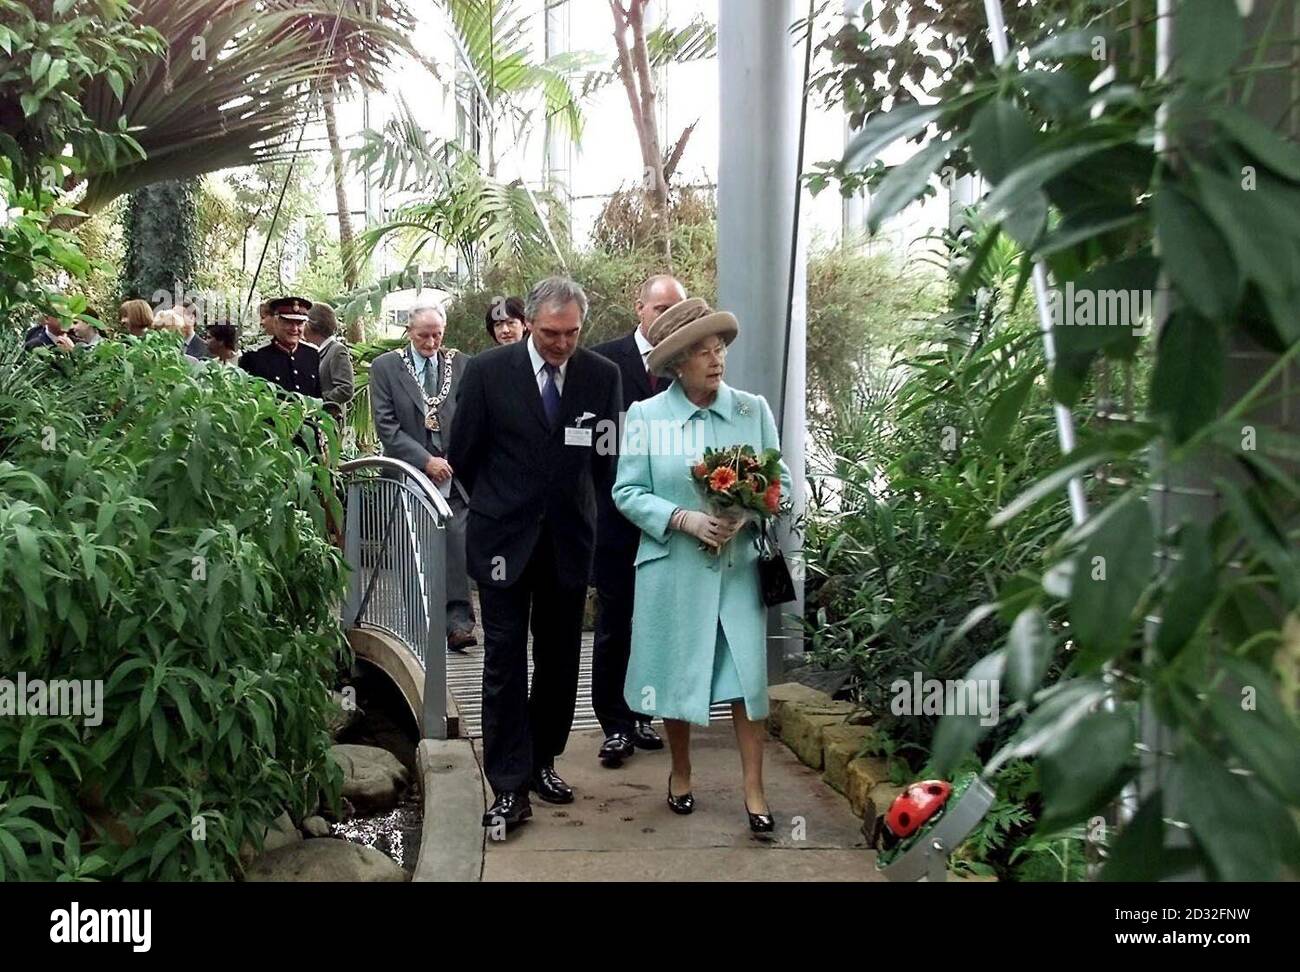 La Reine traverse les jardins d'hiver.La Reine est arrivée aujourd'hui à Sunderland à l'occasion de la deuxième étape de sa tournée nationale du Jubilé d'Or.* accompagné du duc d'Édimbourg, le couple royal a officiellement ouvert les jardins d'hiver de Sunderland, qui abritent 1 500 plantes exotiques dans un climat intérieur subtropical. Banque D'Images